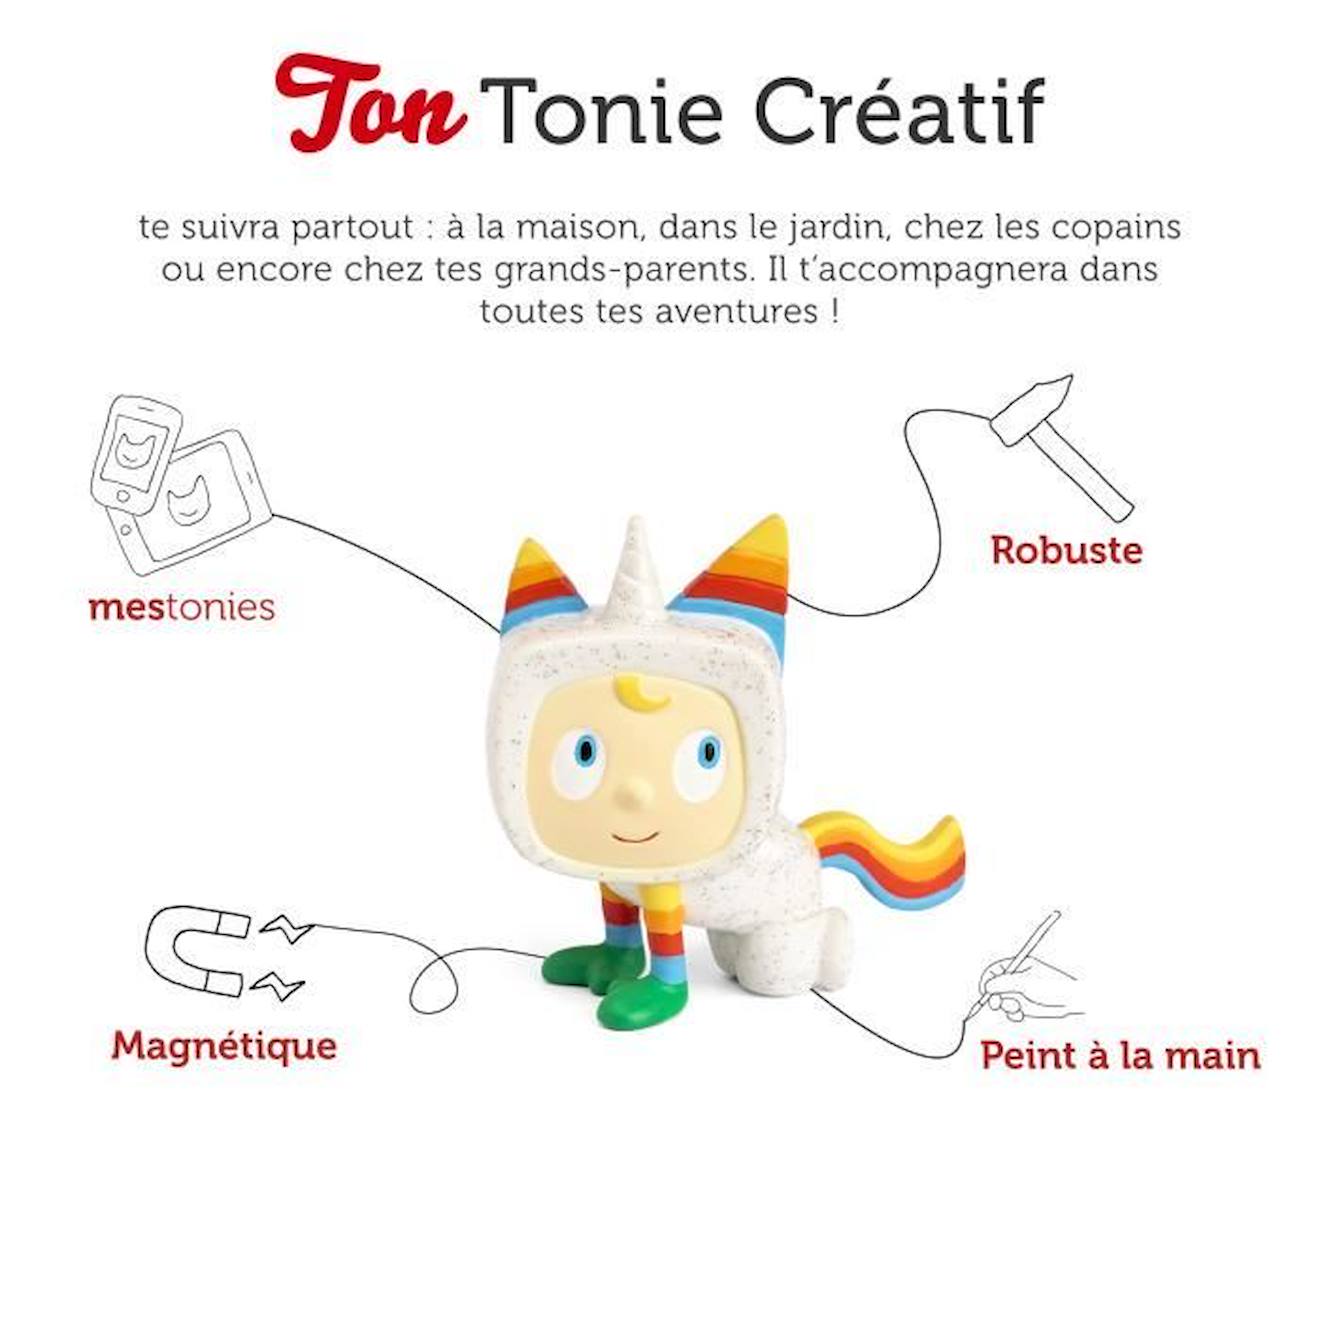 tonies® - Figurine Tonie Créatif - Licorne - Figurine Audio pour